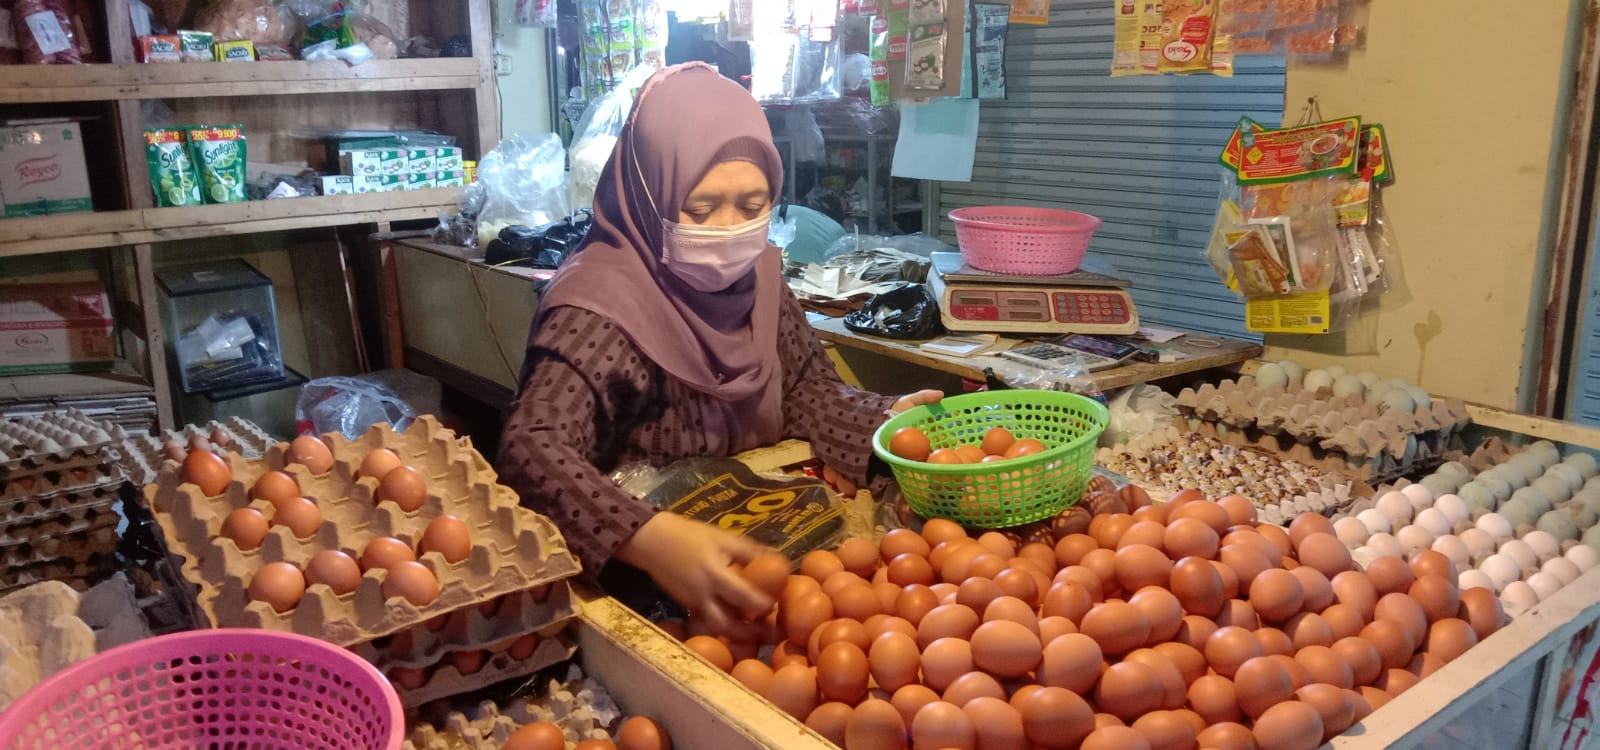 Harga Telur Ayam di Kota Bandung Melejit Hingga Rp32 Ribu Perkilo